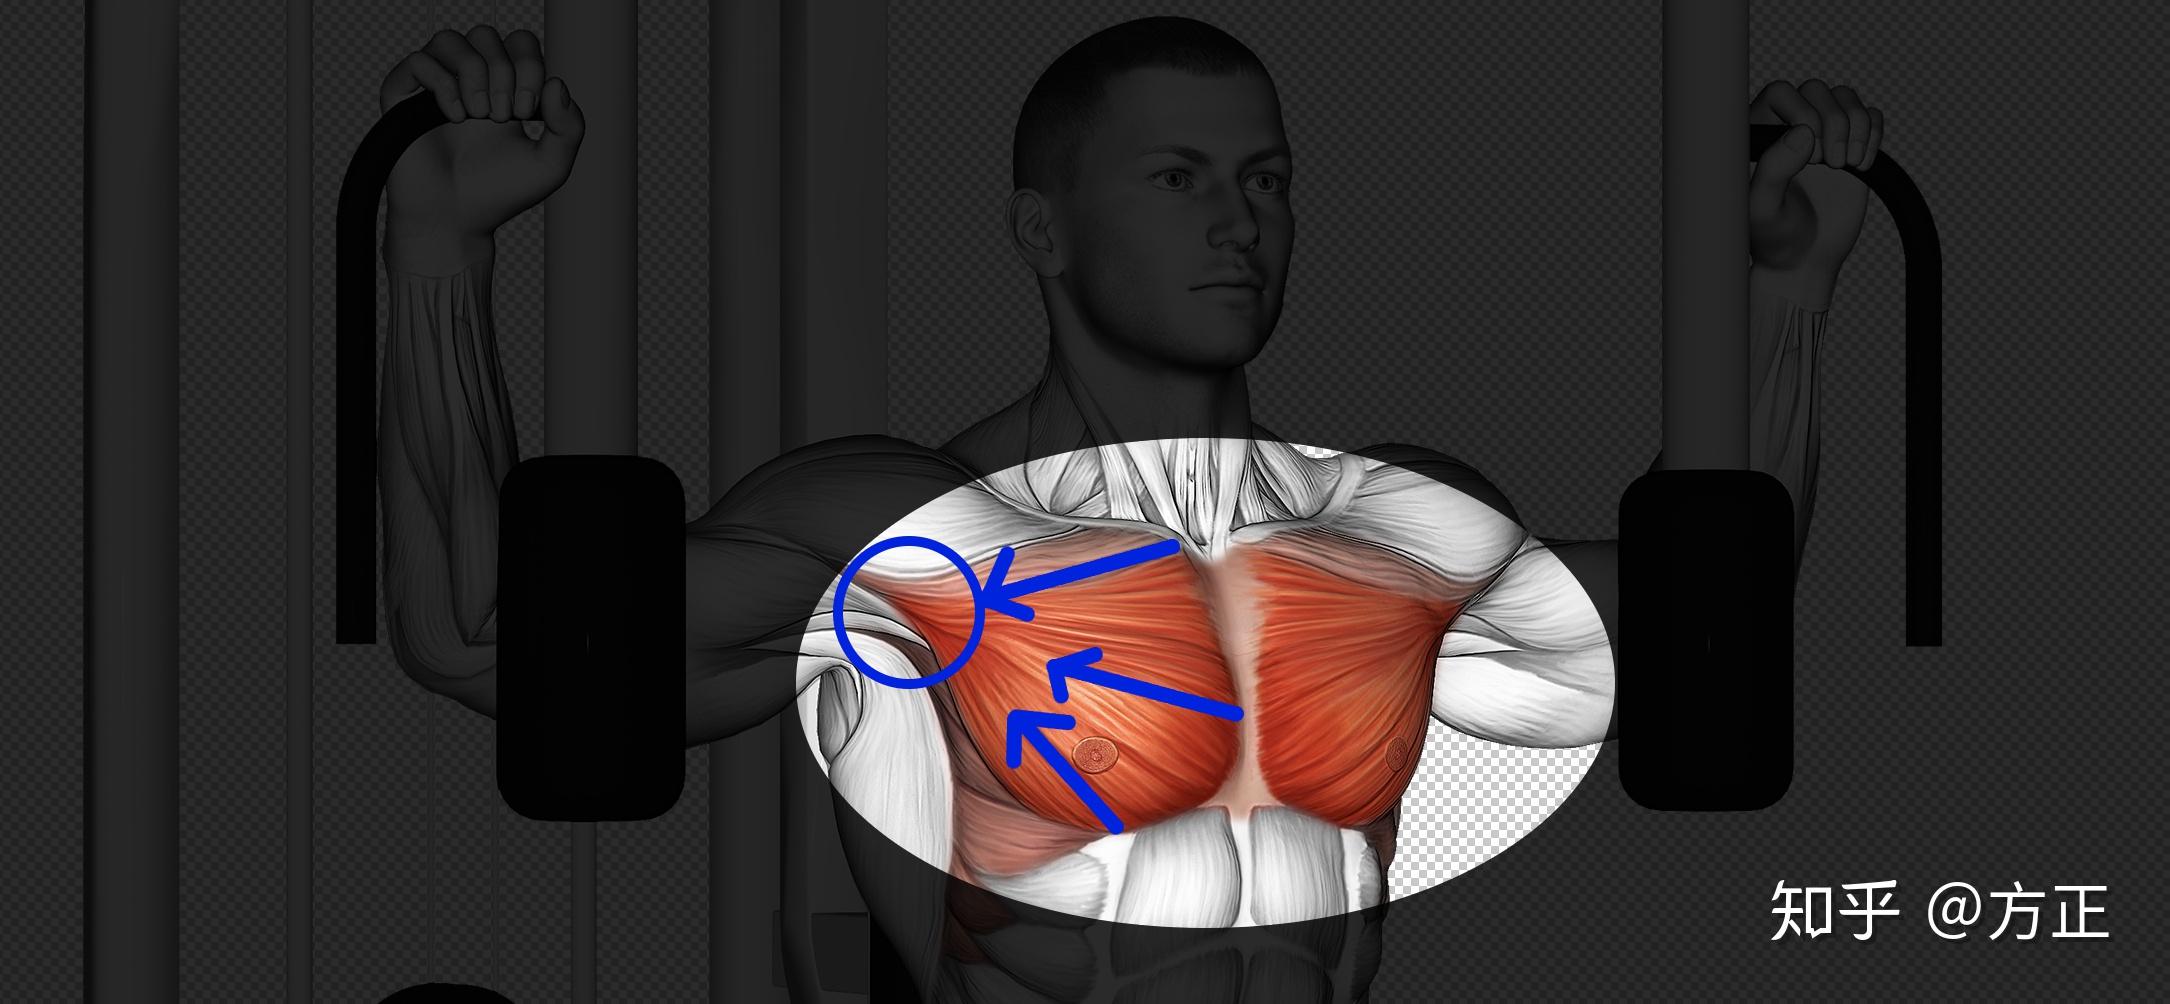 功能解剖—胸部肌肉及其功能分析 - 知乎